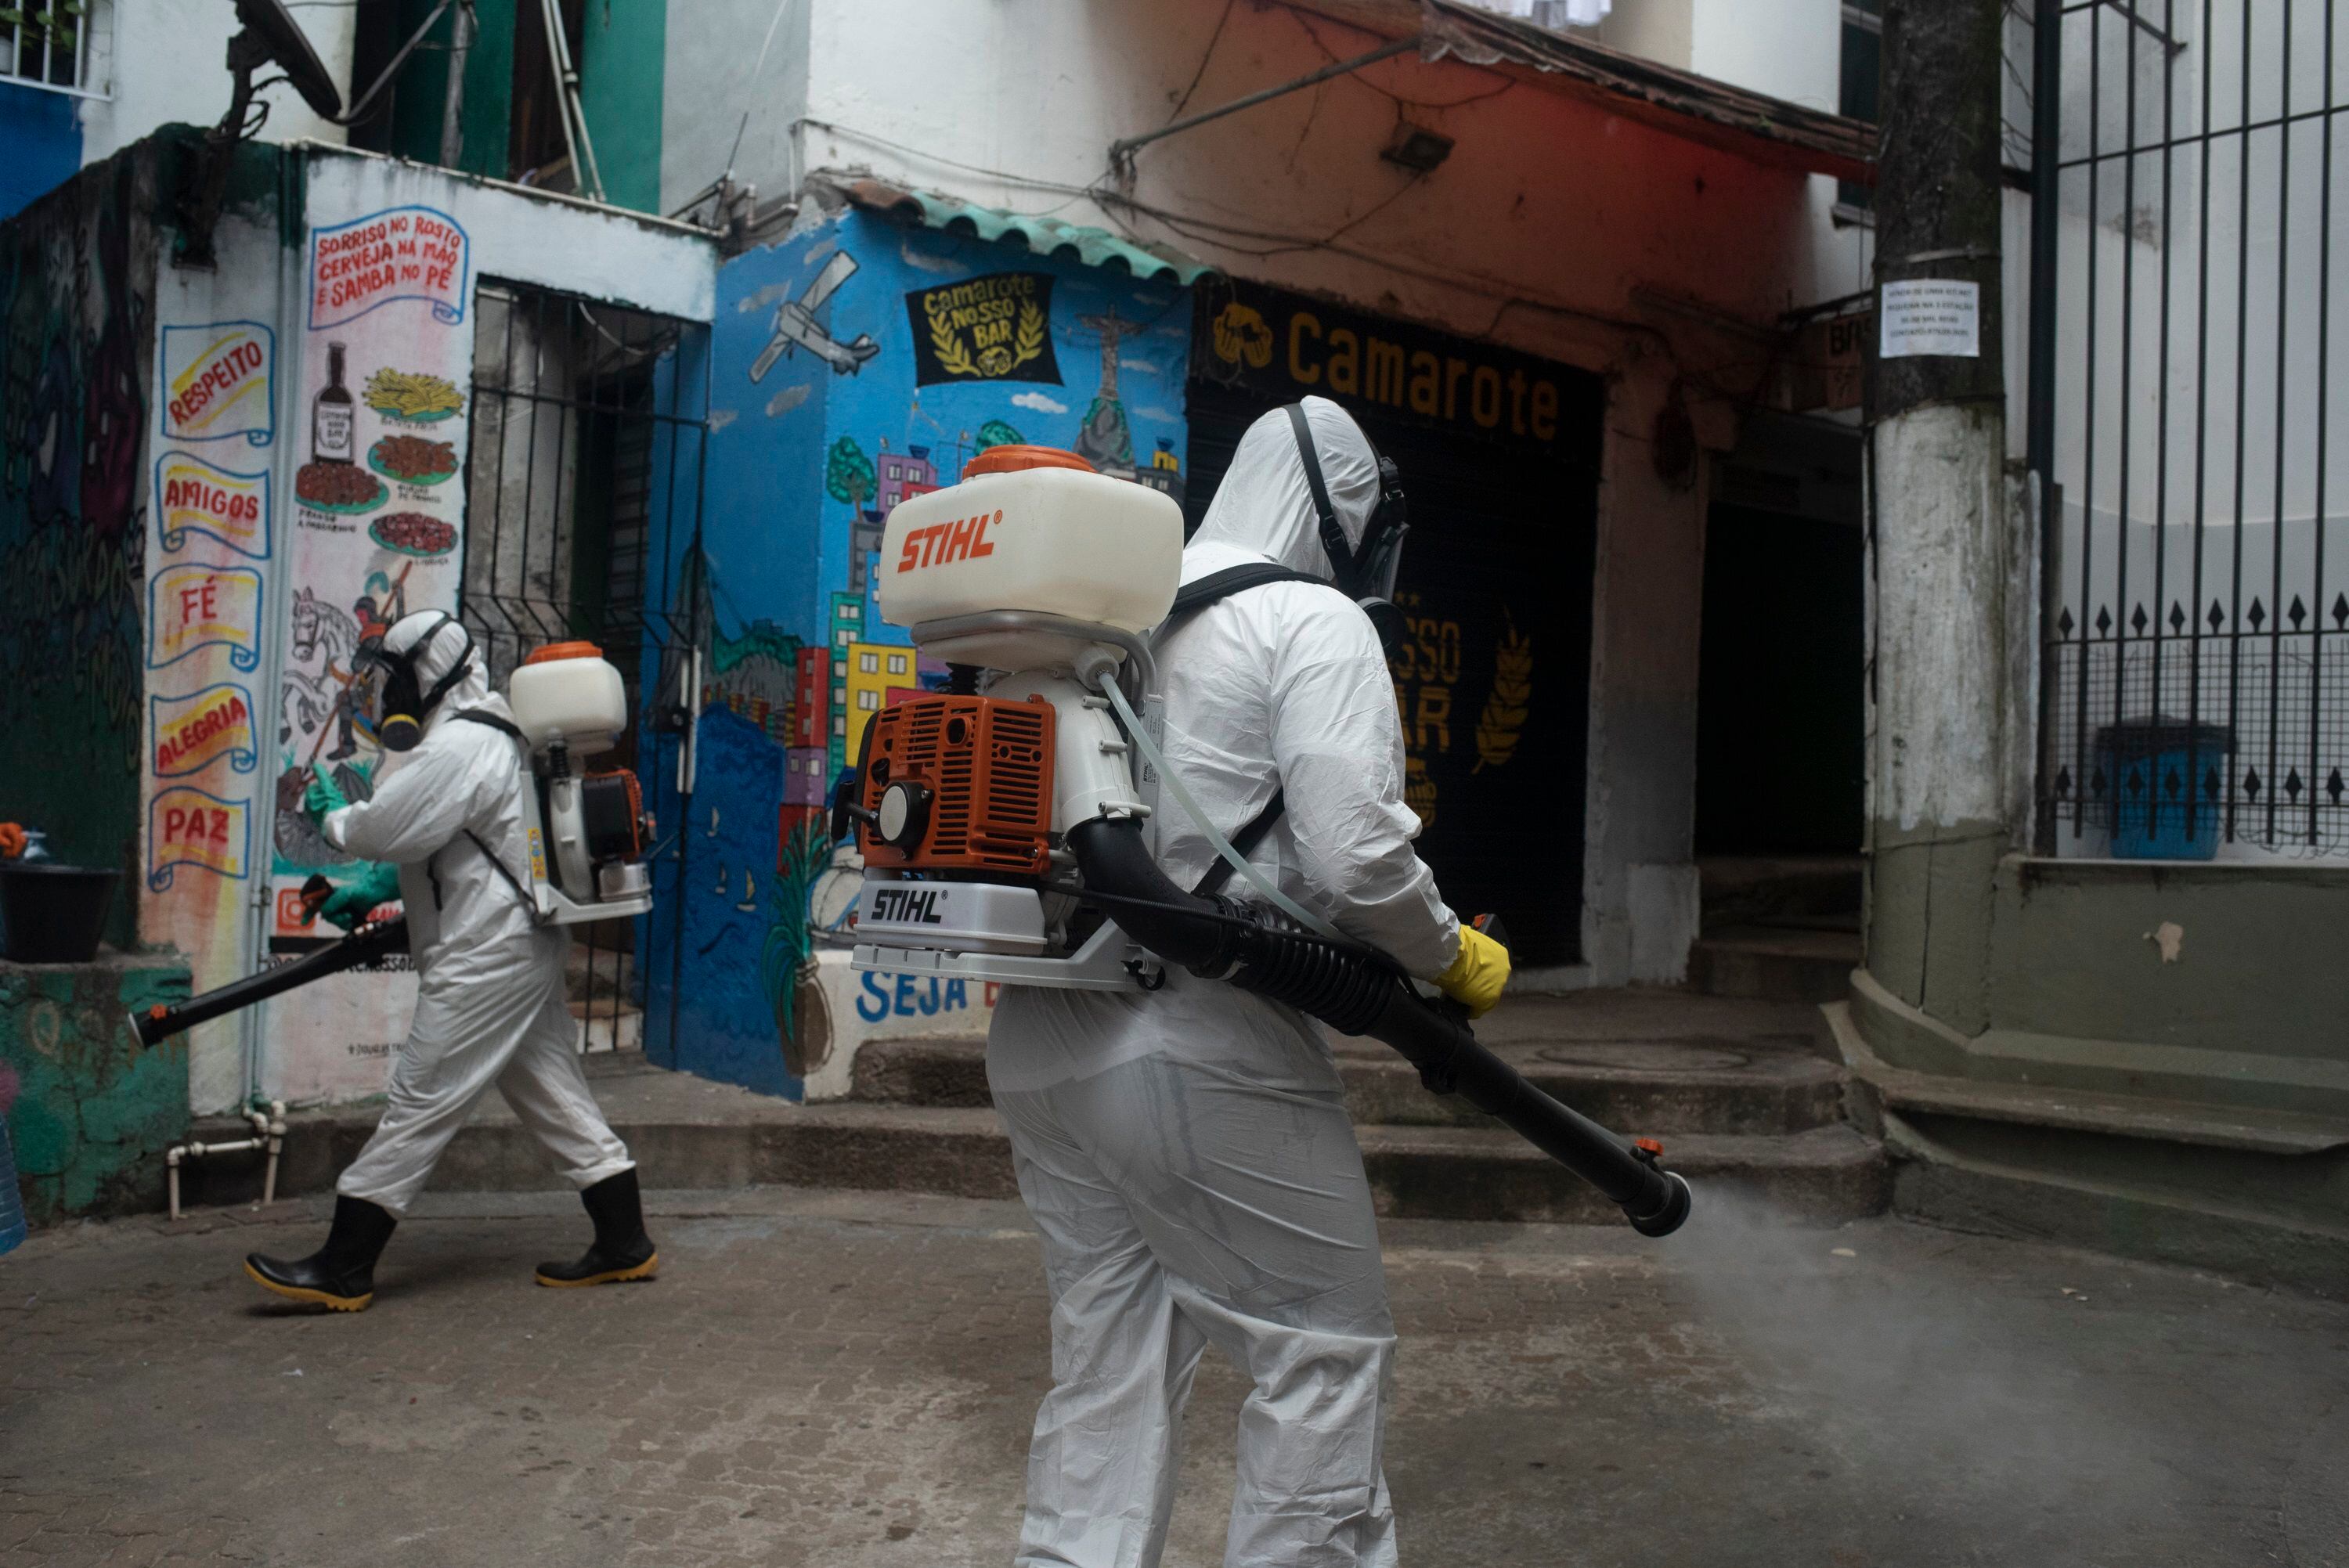 12/01/2021 Un grupo de trabajadores desinfecta la favela de Santa Marta, en Río de Janeiro, Brasil.
POLITICA SUDAMÉRICA BRASIL INTERNACIONAL LATINOAMÉRICA
FABIO TEIXEIRA / ZUMA PRESS / CONTACTOPHOTO
